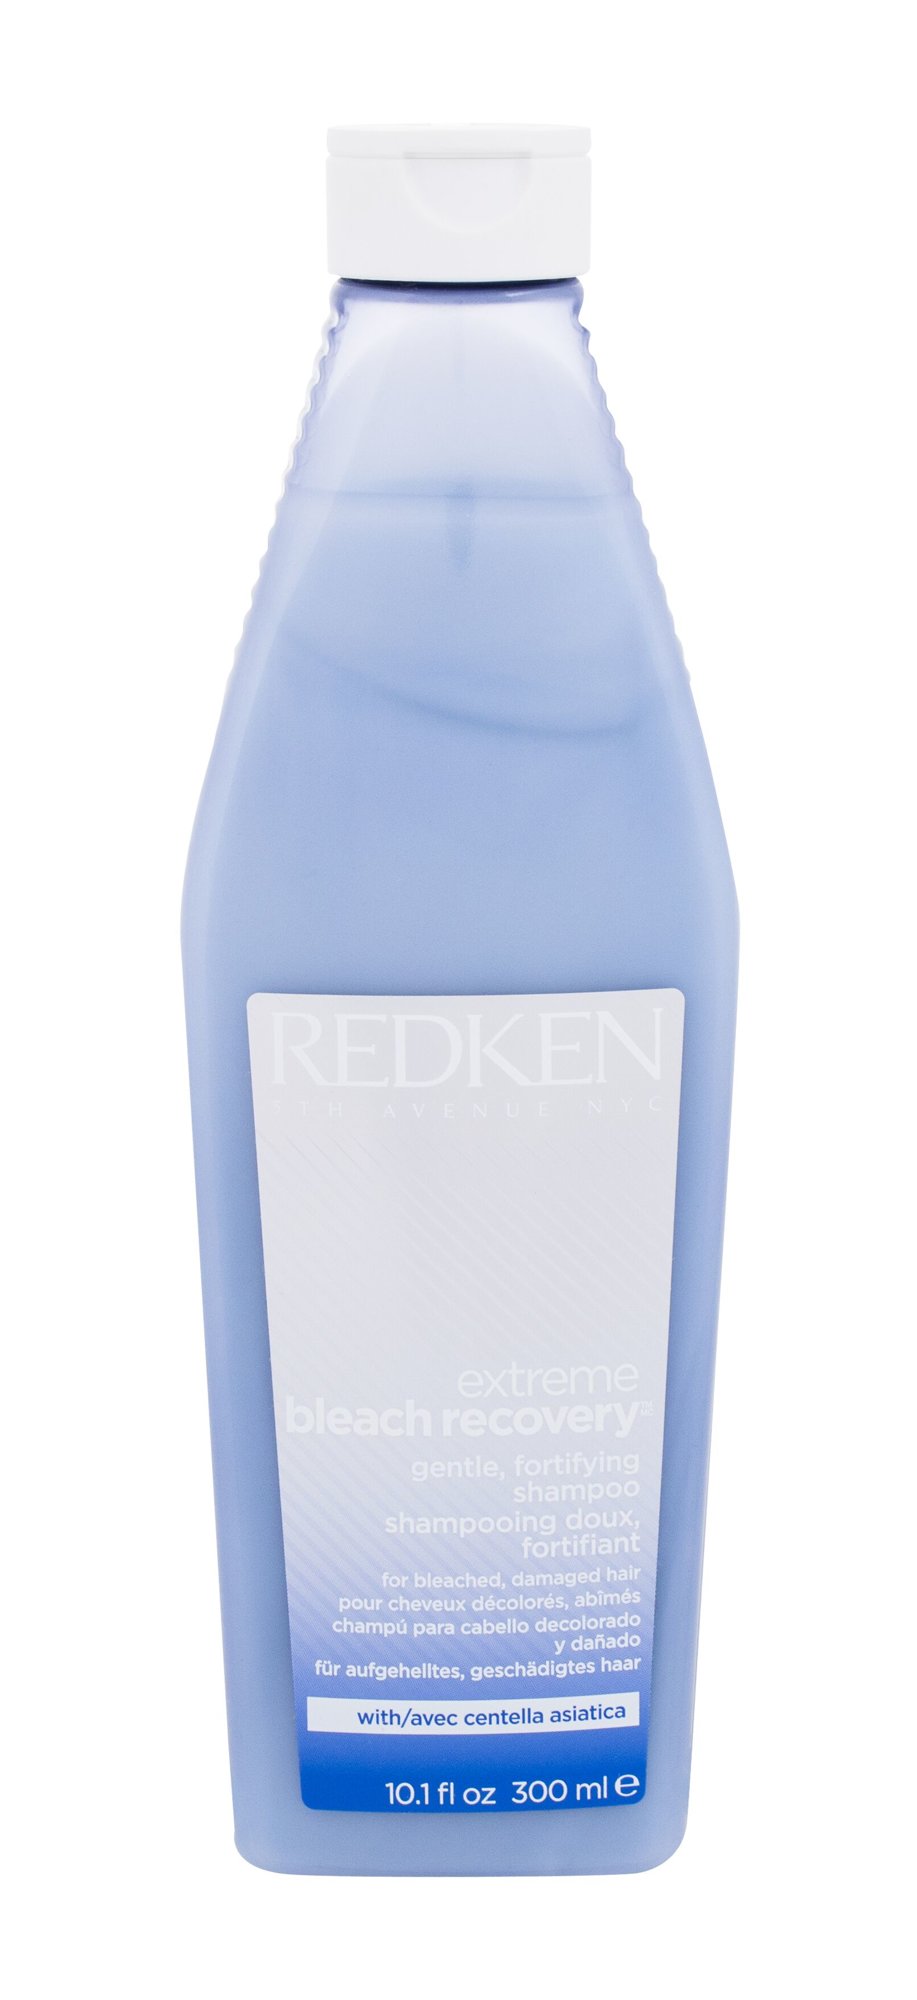 Redken Extreme Bleach Recovery šampūnas